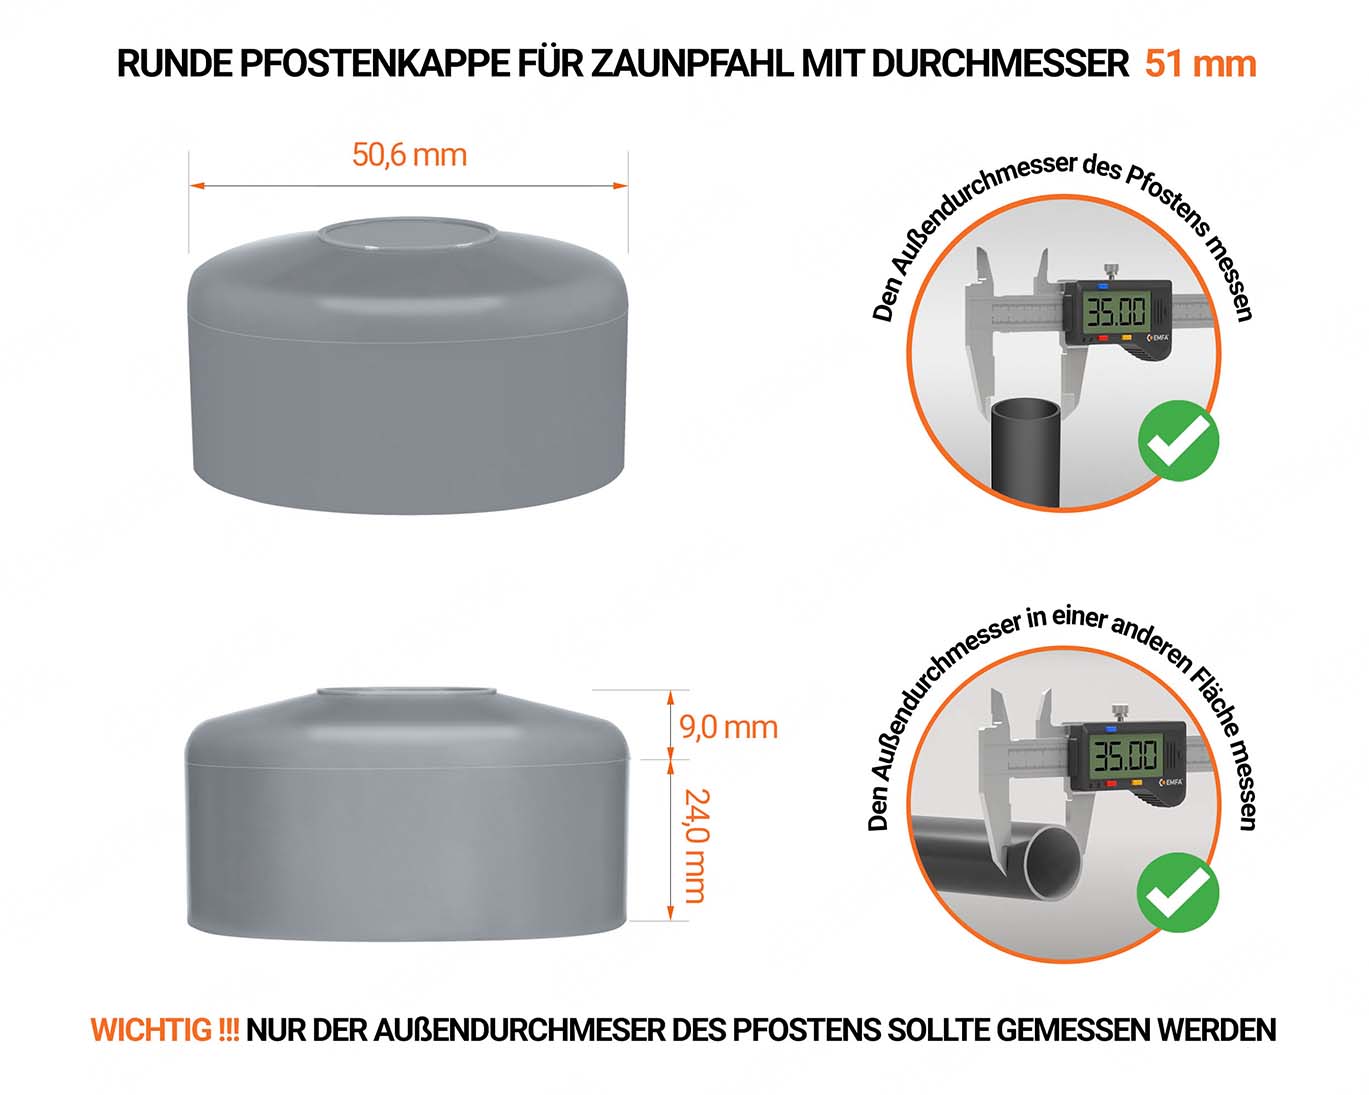 Graue Pfostenkappen rund für Pfostendurchmesser  51 mm mit technischen Abmessungen und Anleitung für korrekte Messung